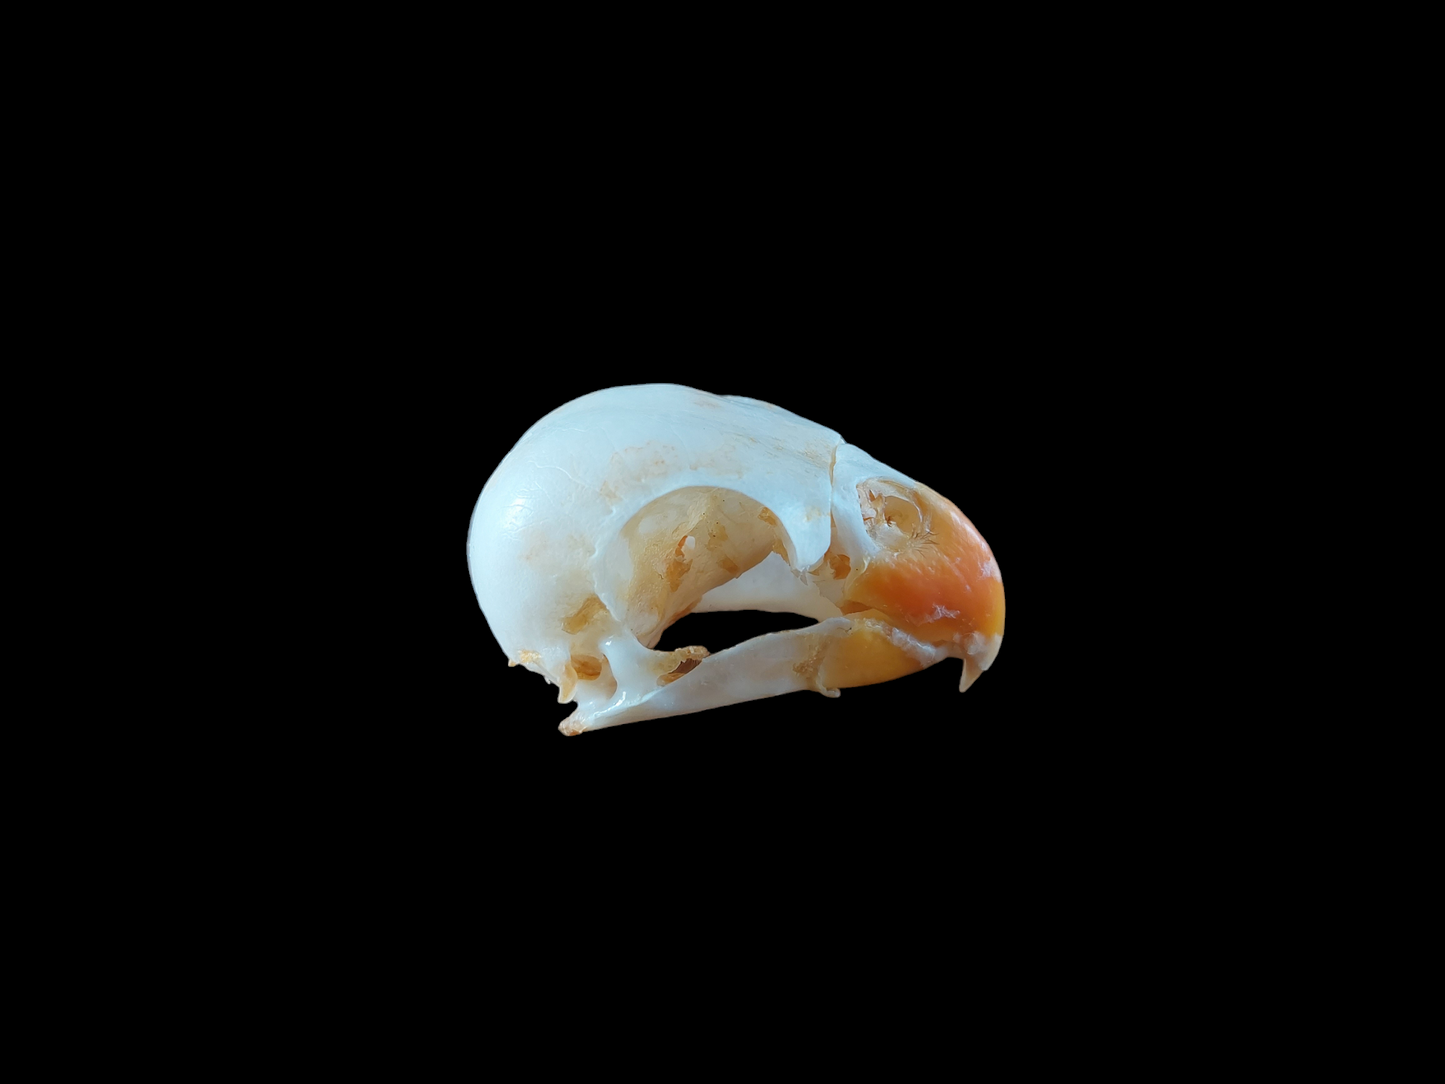 Rosella parakeet skull